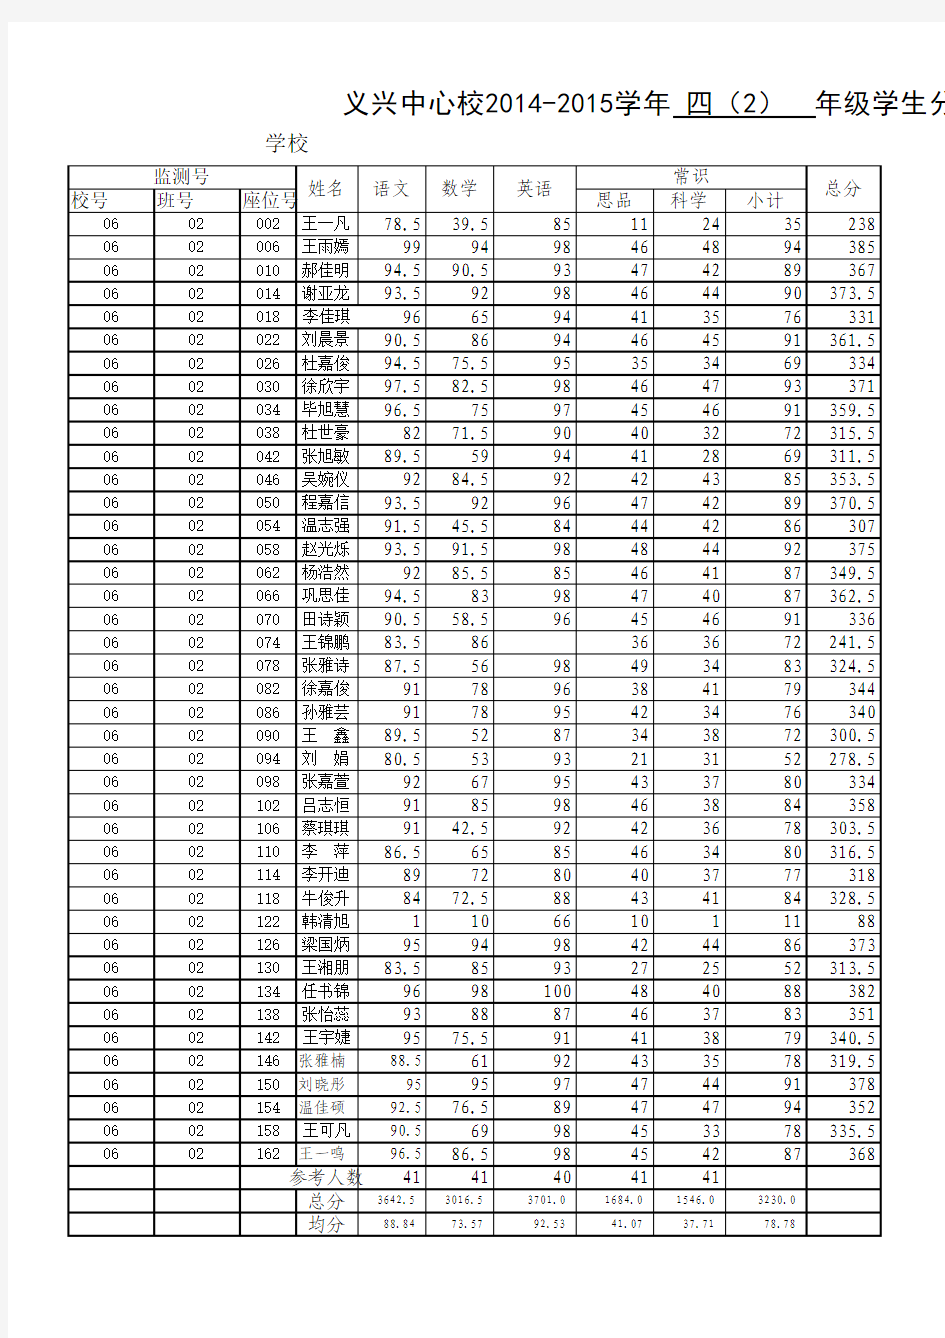 2014-2015河北小学四年级期末考试成绩表